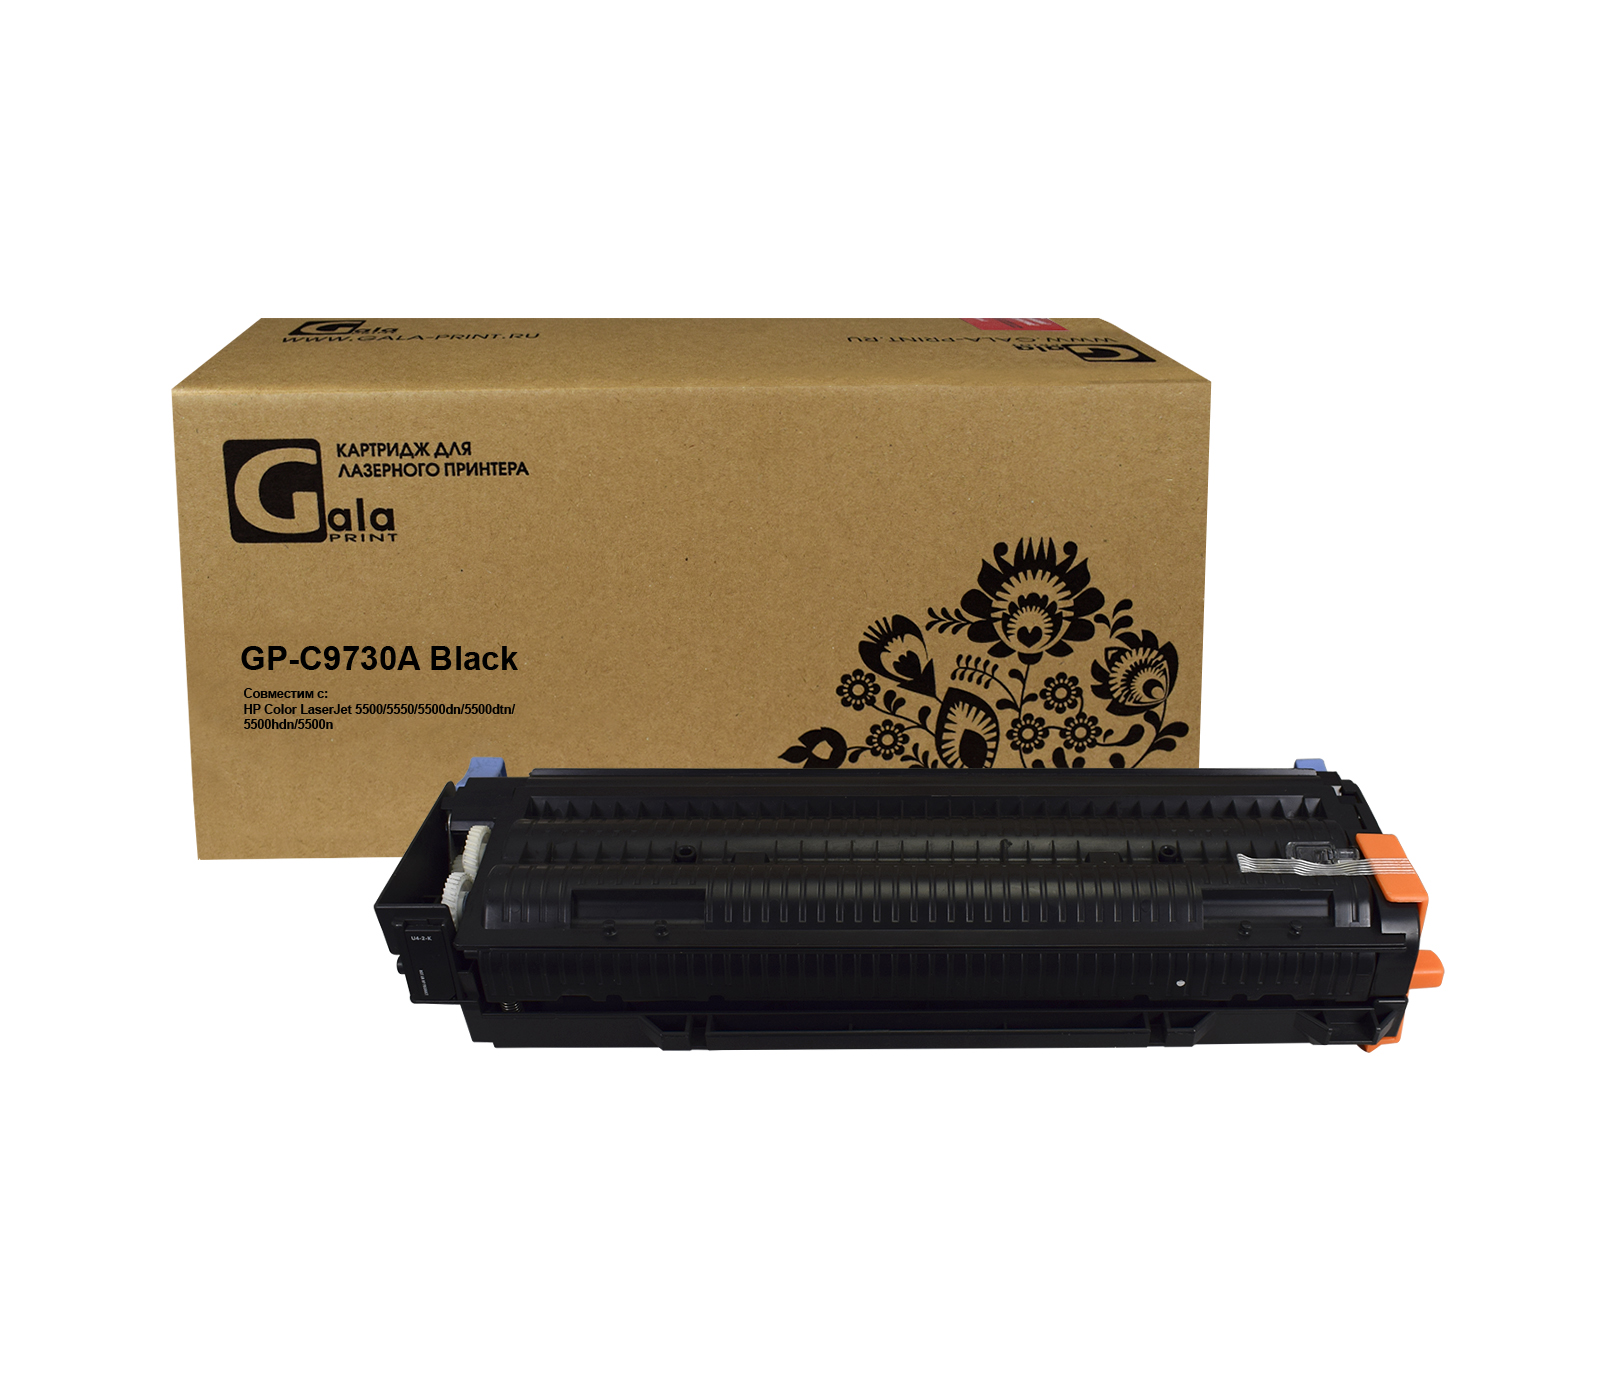 Картридж GP-C9730A для принтеров HP LJ 5500/5550/Canon LBP-2710/2810 Black 13000 копий GalaPrint